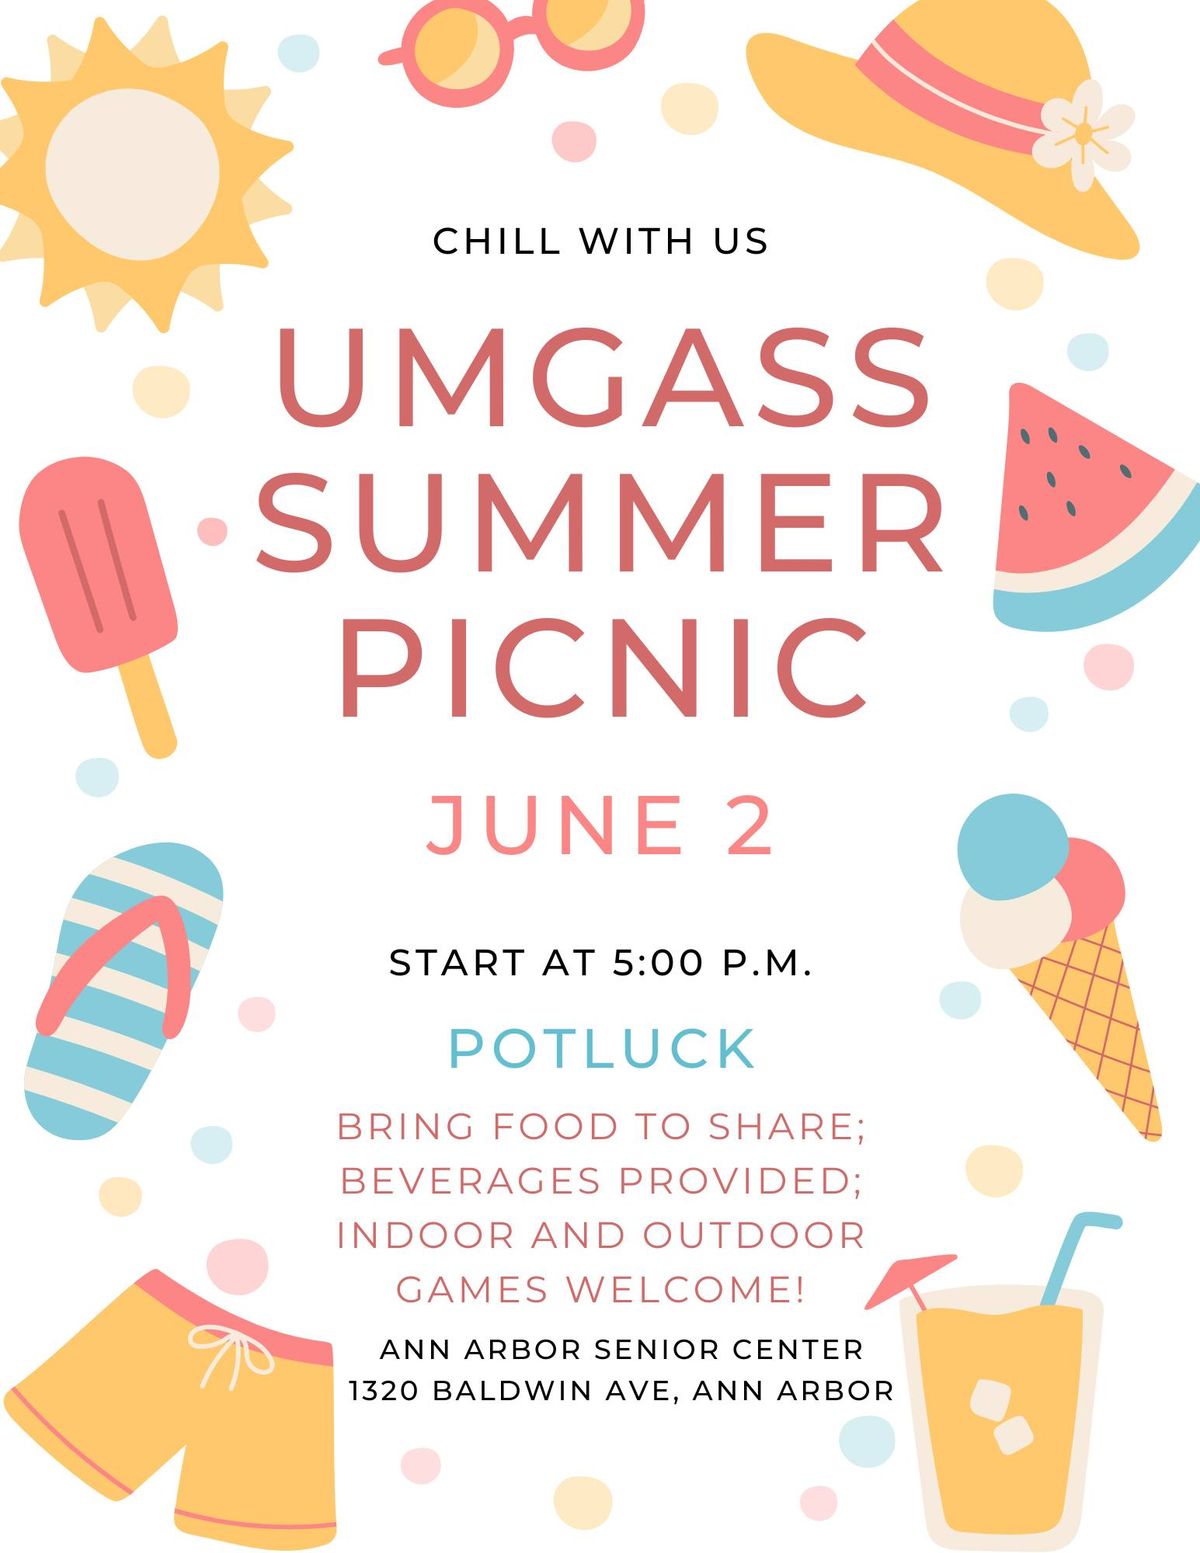 UMGASS Summer Picnic Potluck